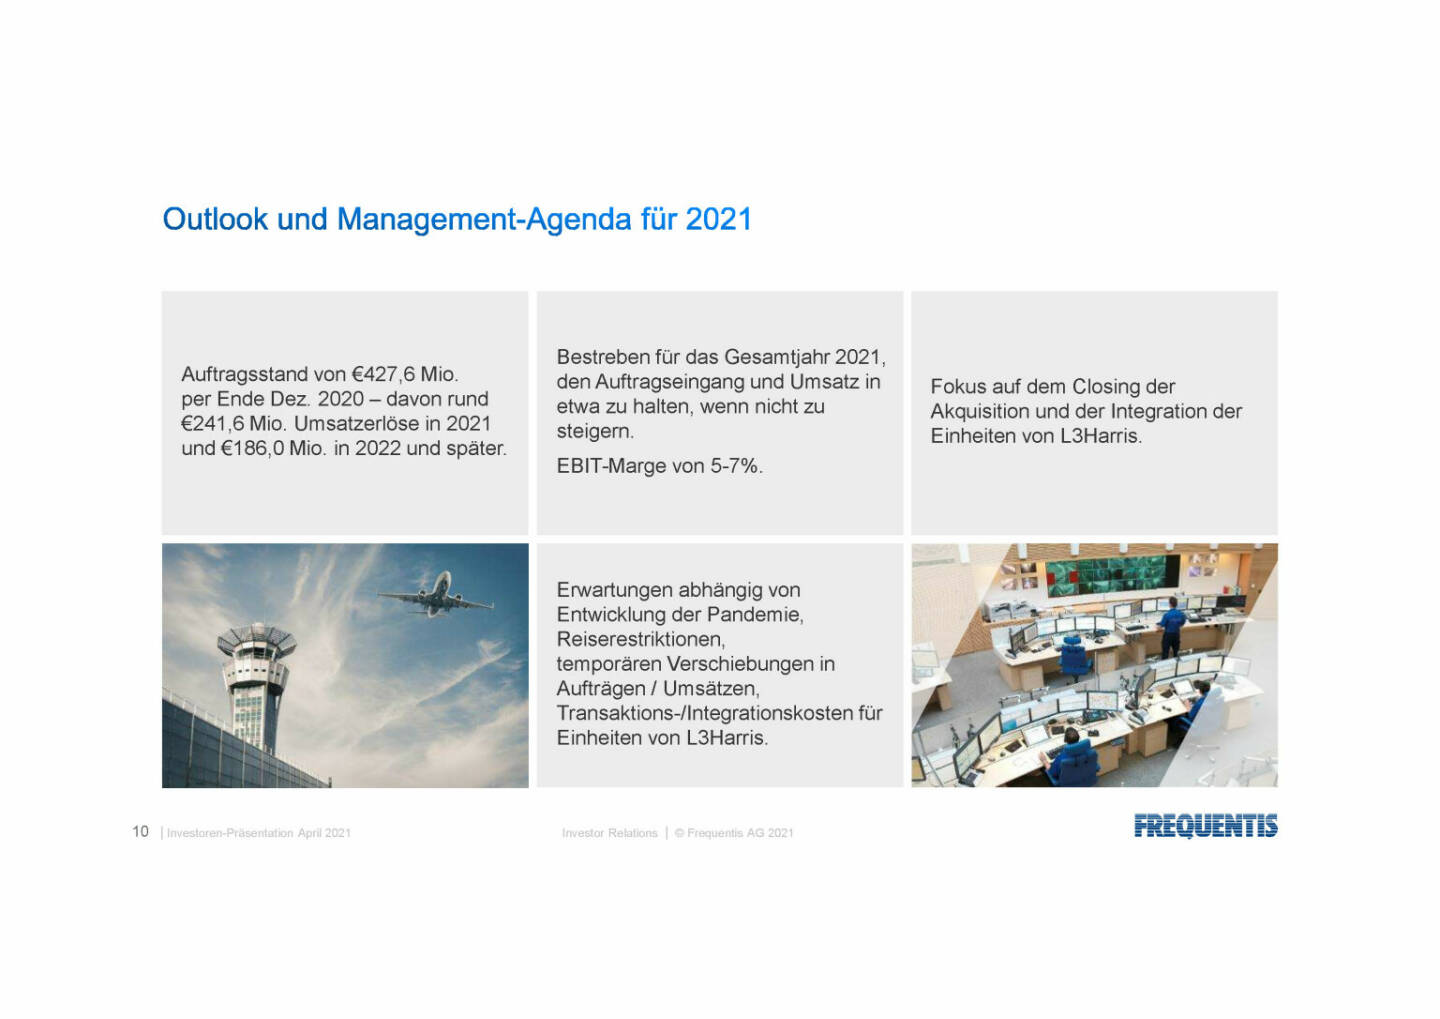 Frequentis - Outlook und Management-Agenda für 2021